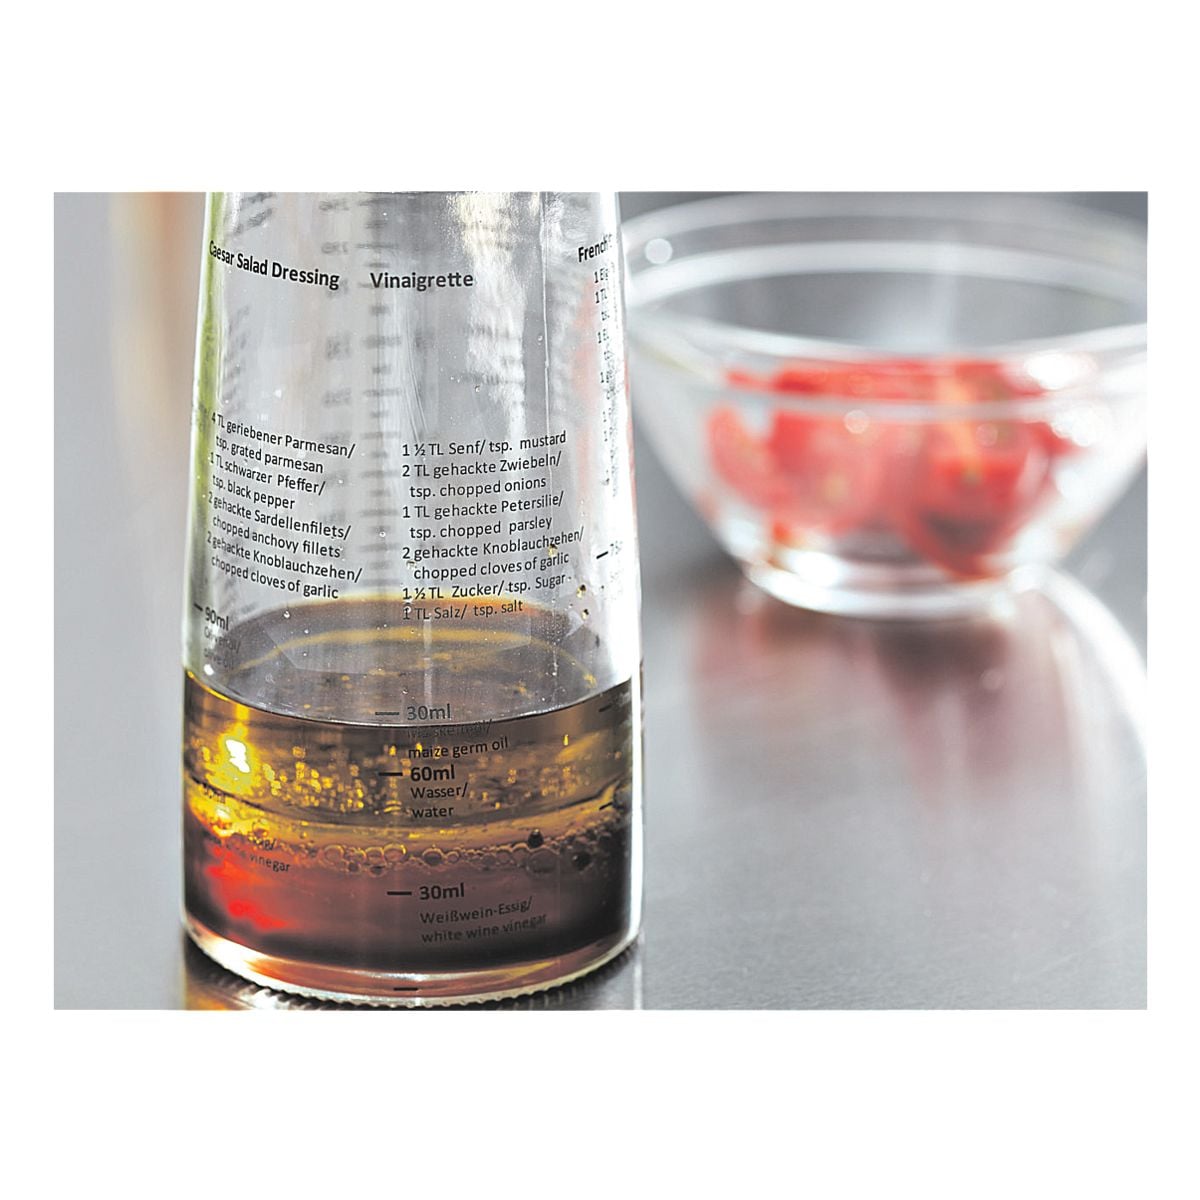 Leifheit Sladressing-Shaker (300 ml)